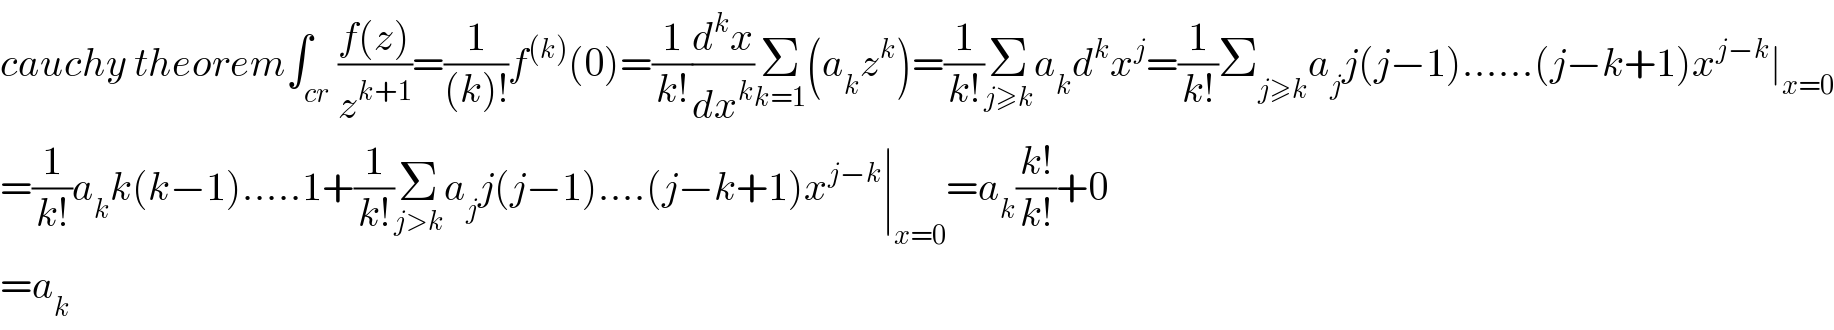 cauchy theorem∫_(cr) ((f(z))/z^(k+1) )=(1/((k)!))f^((k)) (0)=(1/(k!))(d^k x/dx^k )Σ_(k=1) (a_k z^k )=(1/(k!))Σ_(j≥k) a_k d^k x^j =(1/(k!))Σ_(j≥k) a_j j(j−1)......(j−k+1)x^(j−k) ∣_(x=0)   =(1/(k!))a_k k(k−1).....1+(1/(k!))Σ_(j>k) a_j j(j−1)....(j−k+1)x^(j−k) ∣_(x=0) =a_k ((k!)/(k!))+0  =a_k   